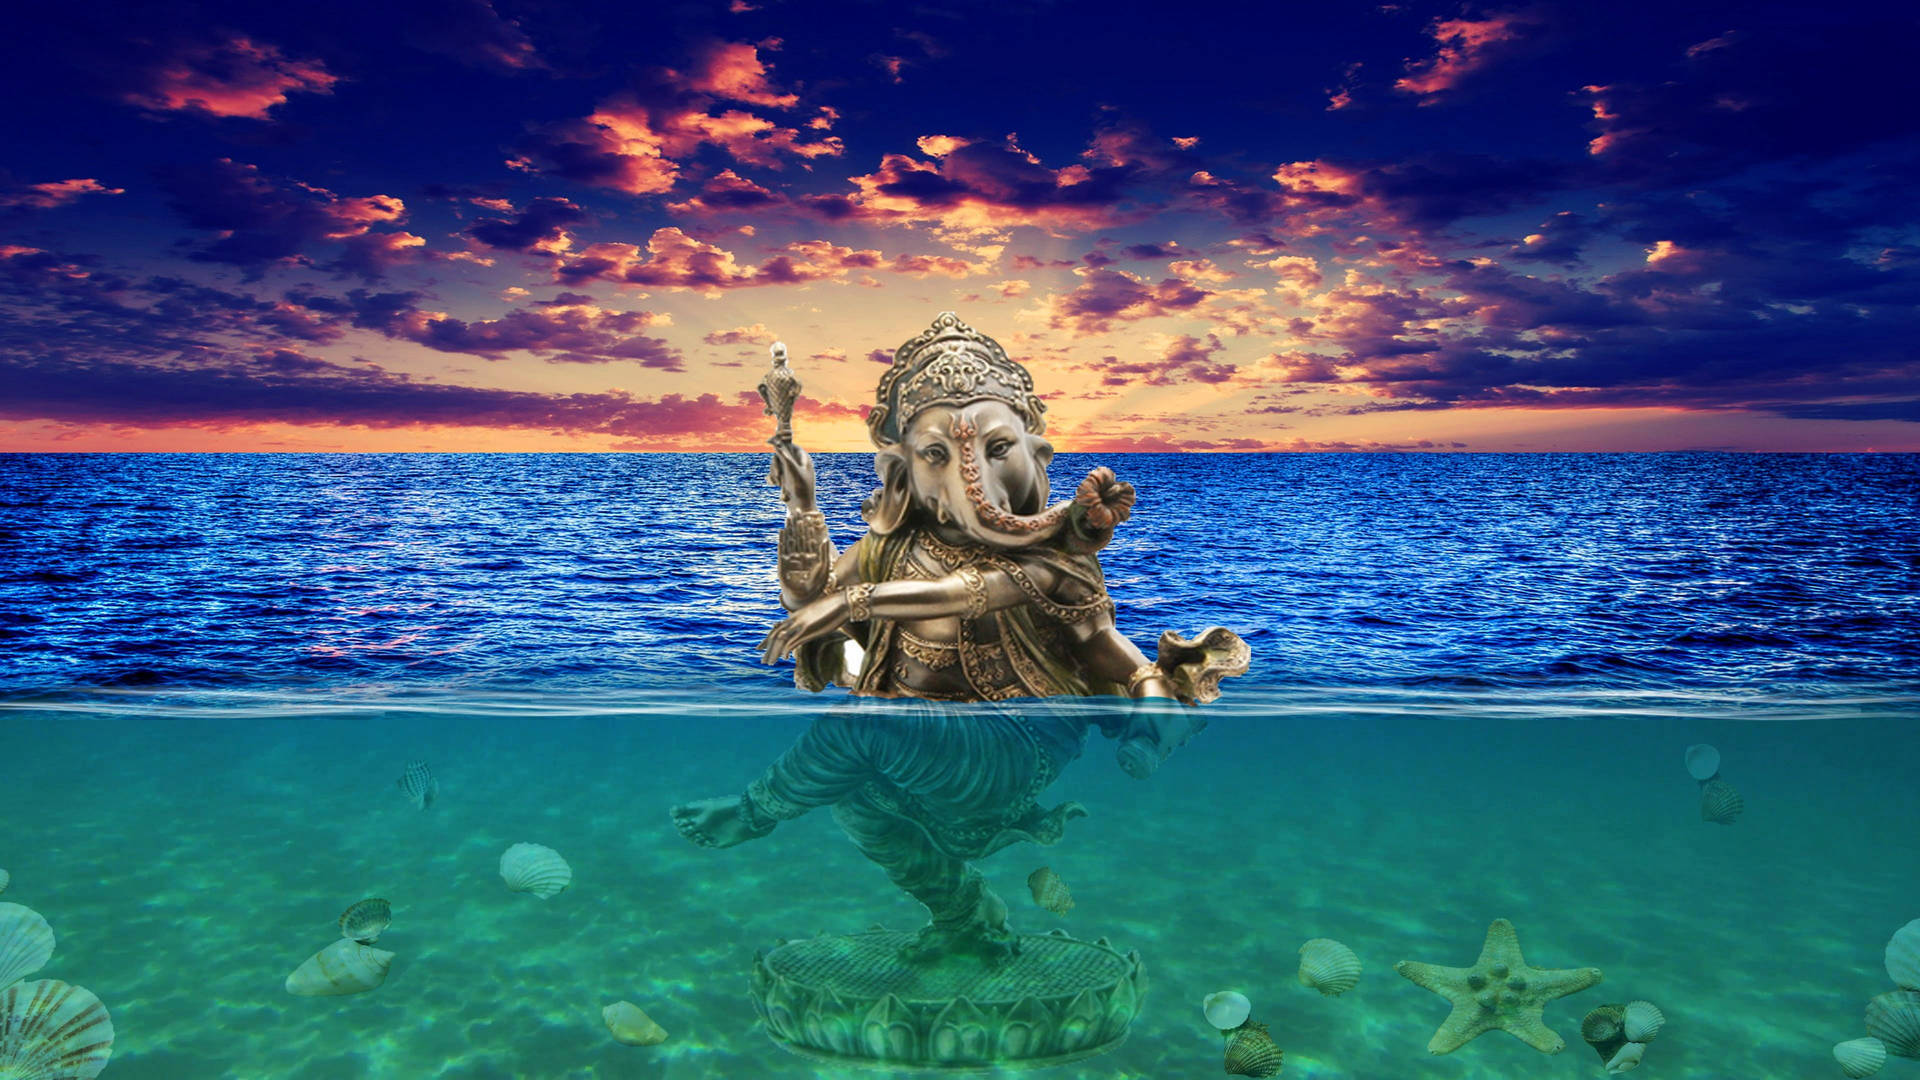 Ganeshji Hd Tanzend Auf Dem Ozean Wallpaper